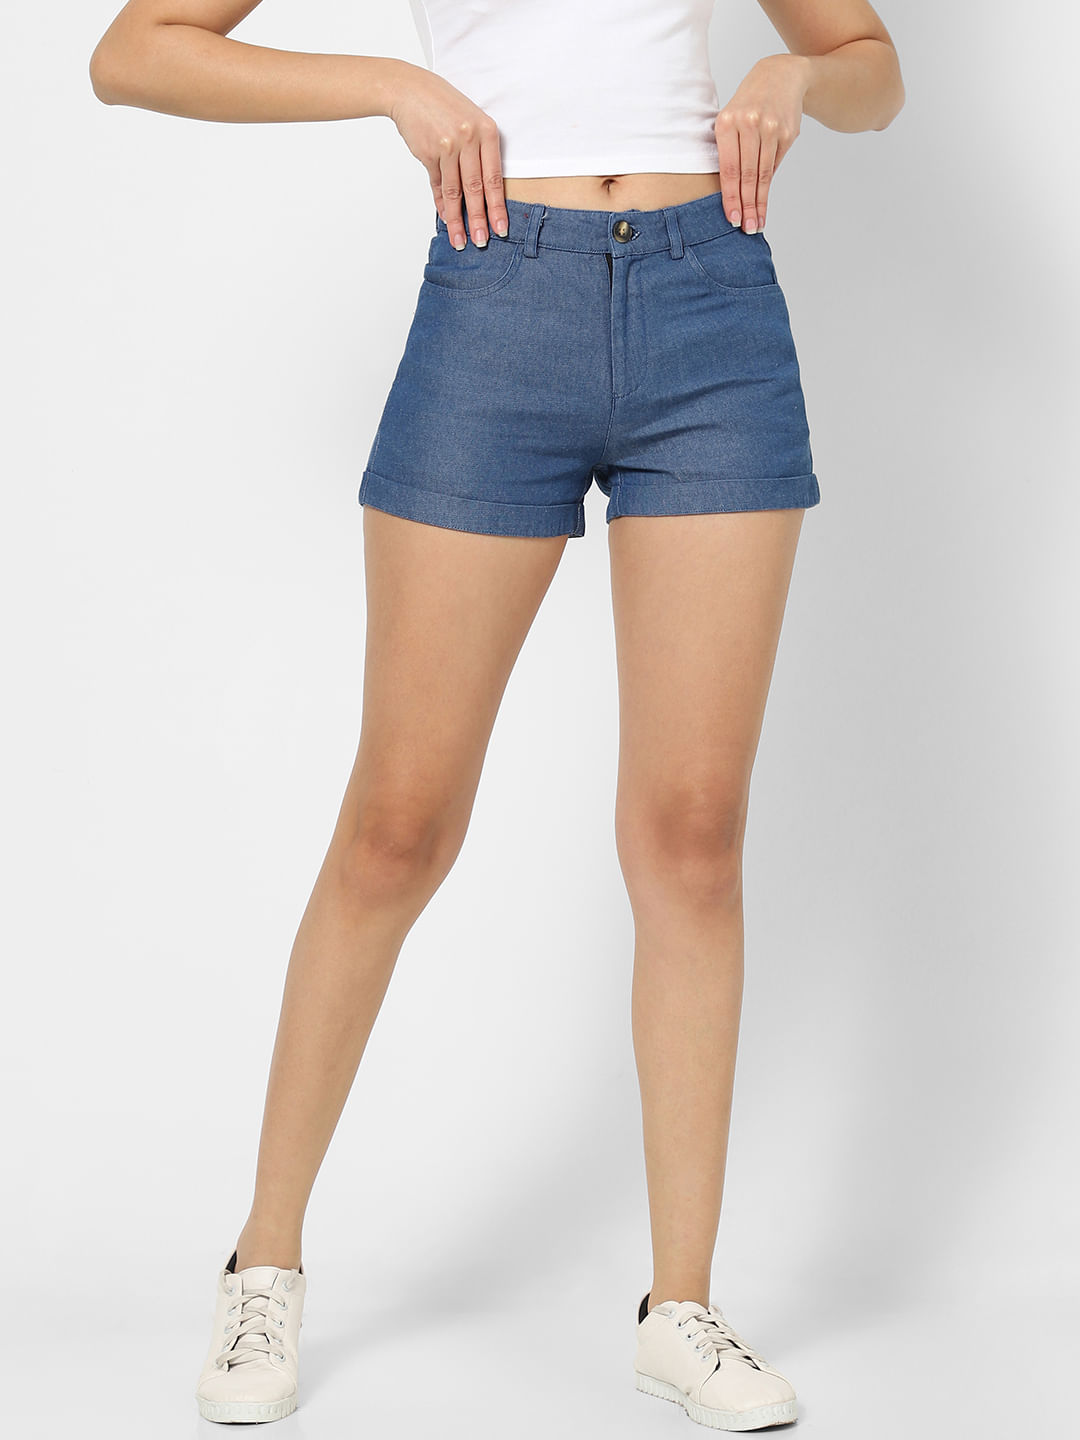 Buy Kex Women's Navy Blue Light Blue Denim Shorts Women Short Denim Shorts  for Women Denim Shorts for Girls Denim Shorts (S) at Amazon.in